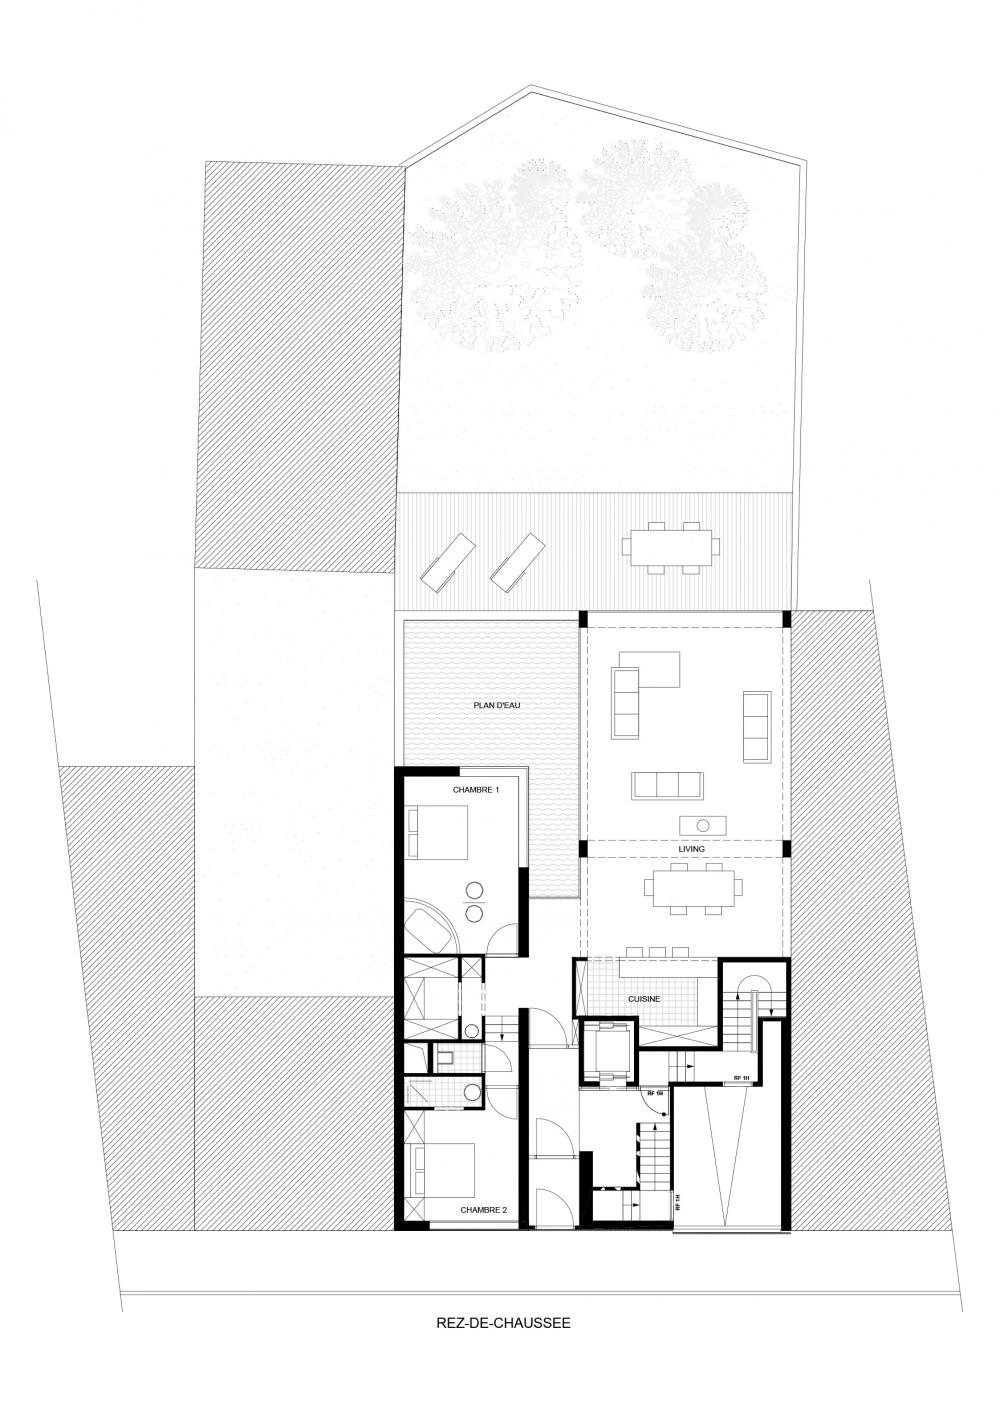 plan du rez-de-chaussée des logements Hector Denis 